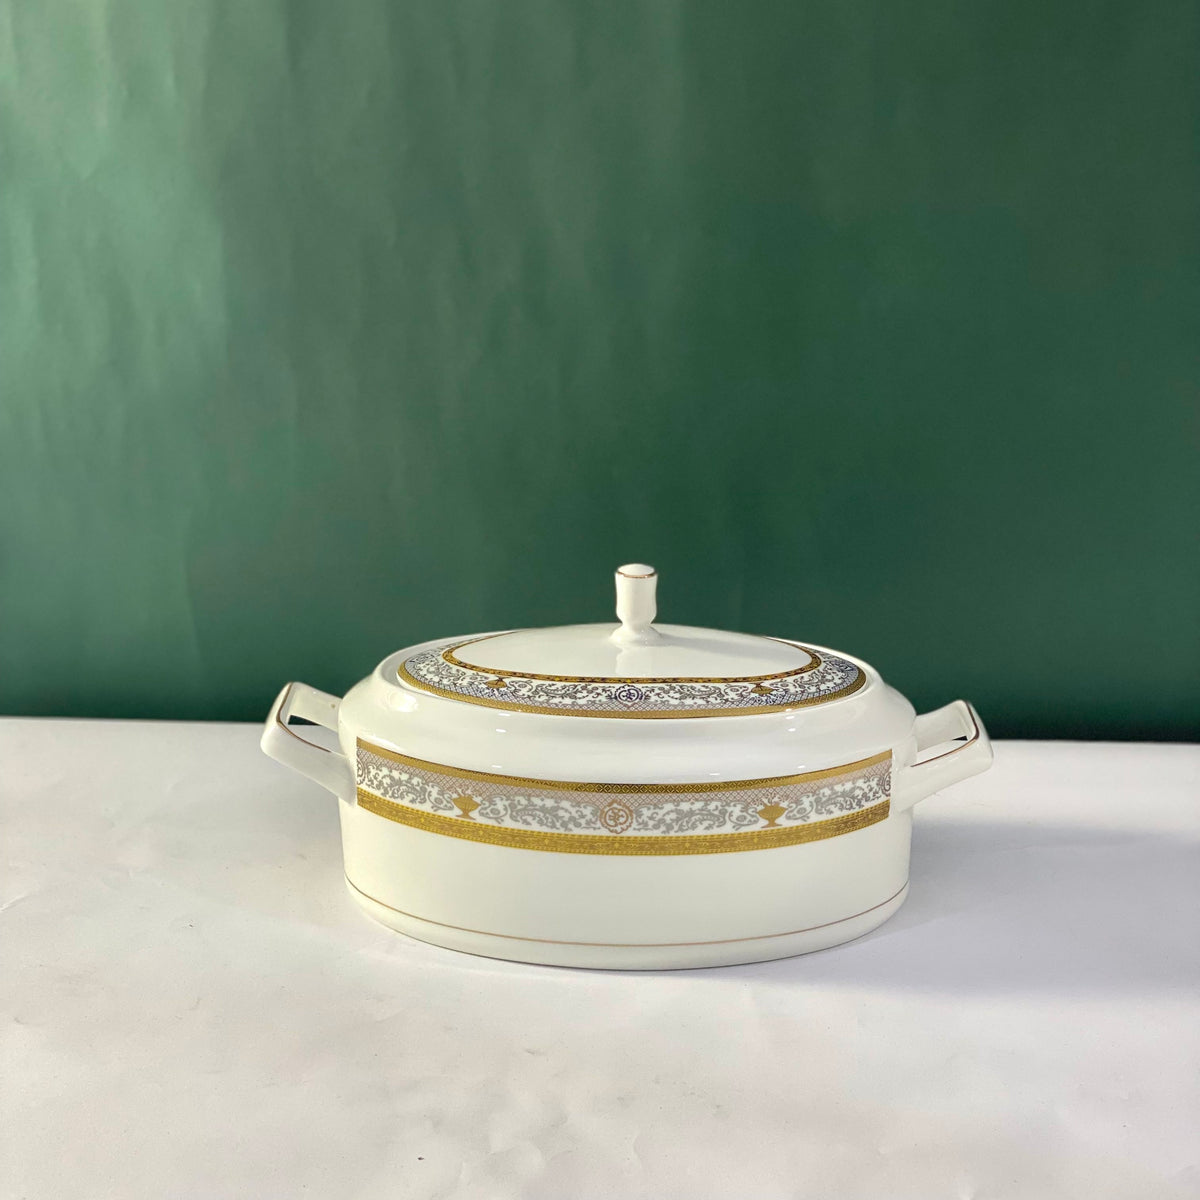 Ceramic Porcelain Serving Bowl with Lid - Design J